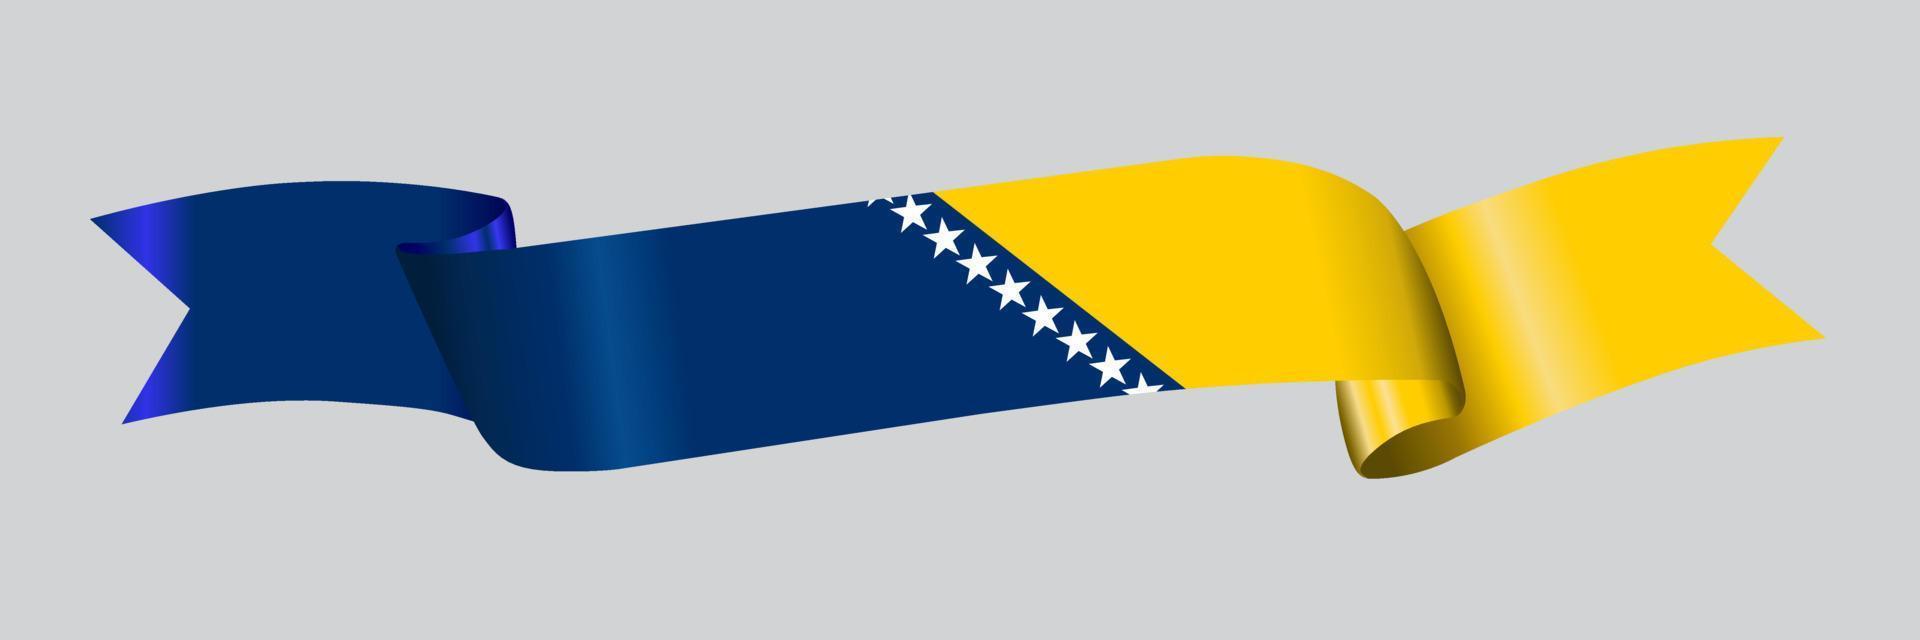 Bandeira 3D da Bósnia e Herzegovina na faixa de opções. vetor